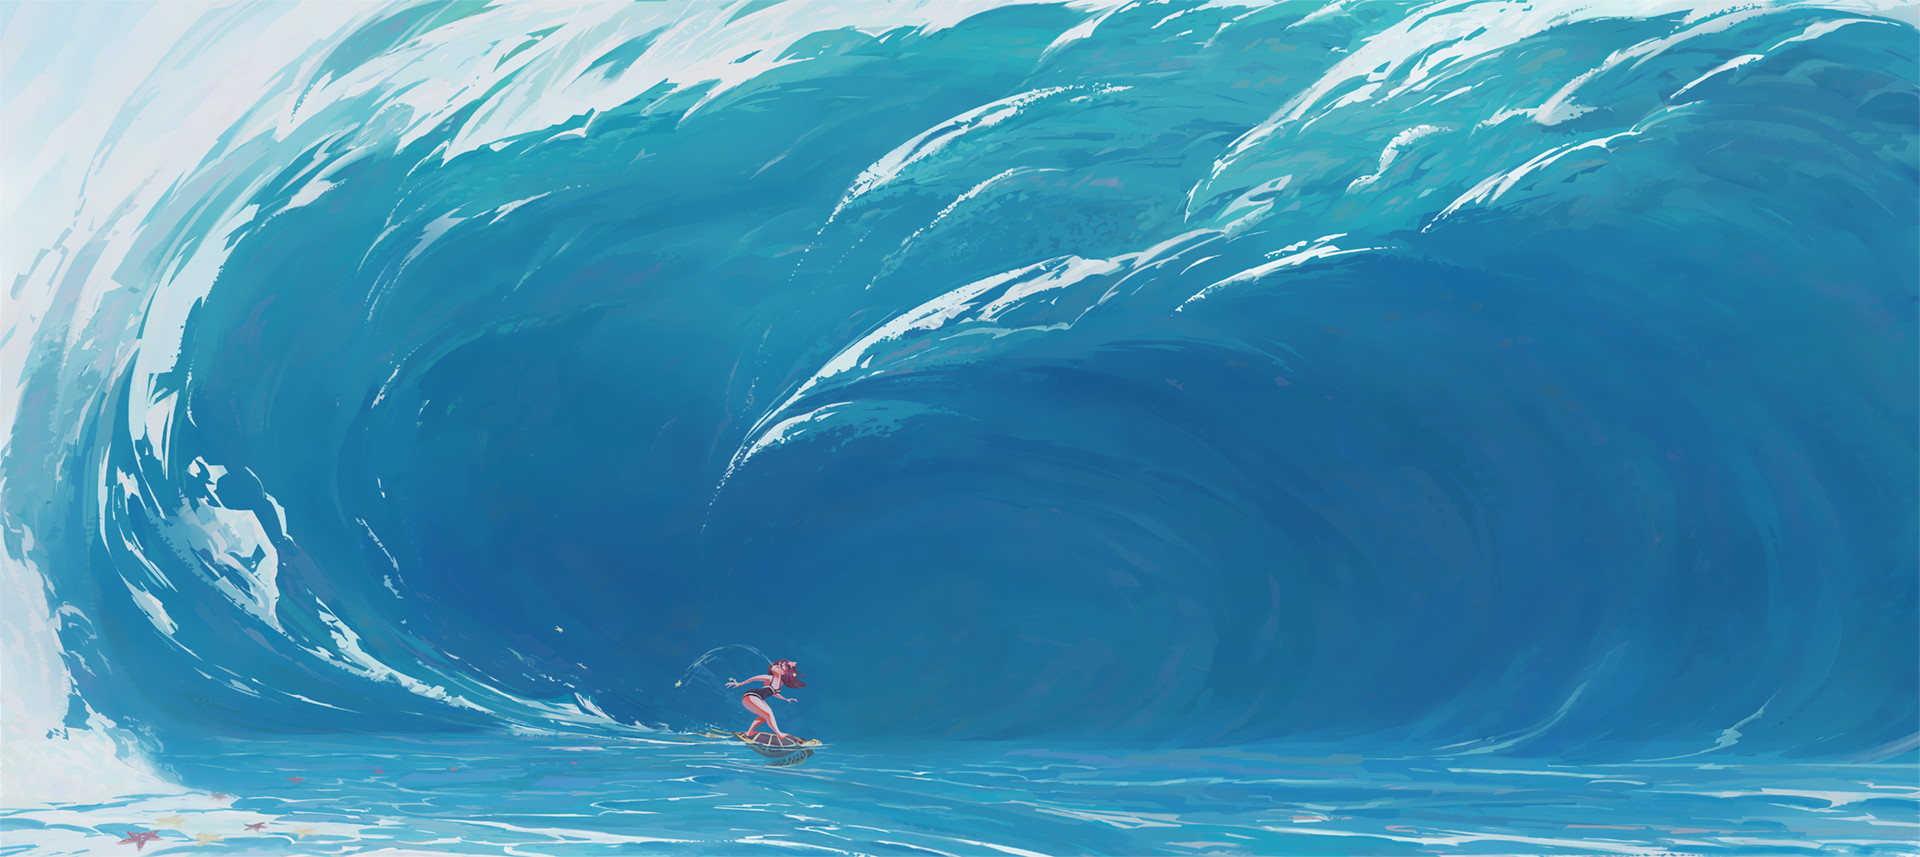 Slawek Fedorczuk Concept Art Sea Waves Foam Women Turtle Water Giant Surfing Blue 1920x857